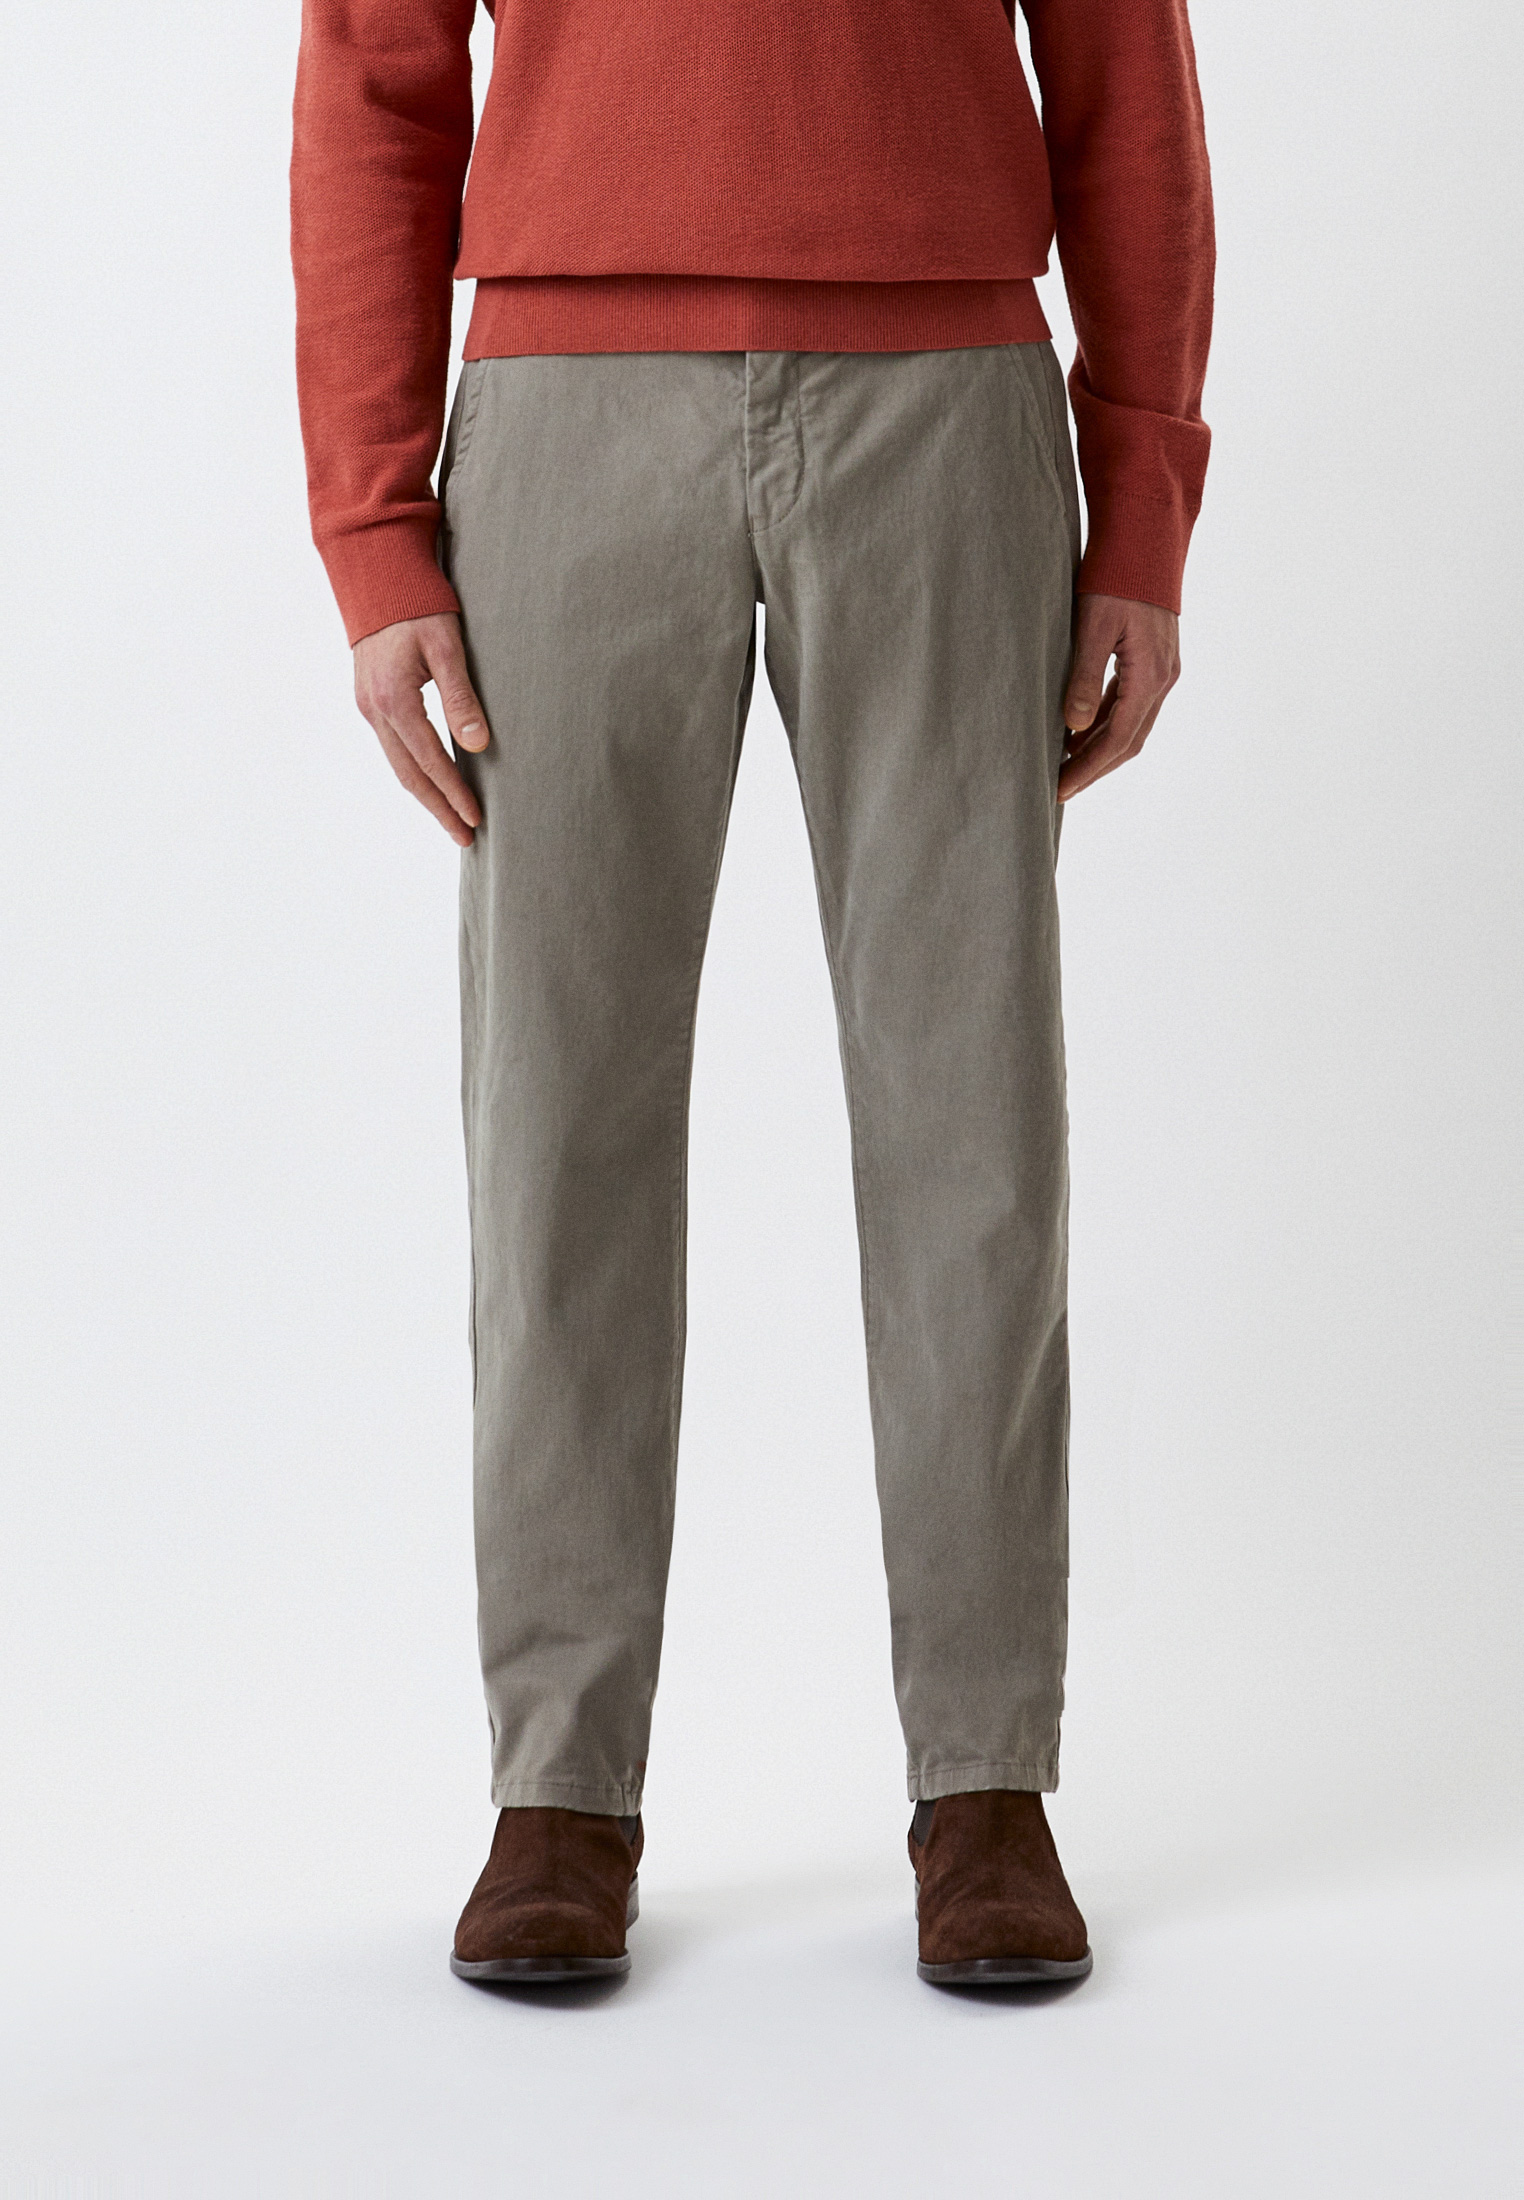 Мужские повседневные брюки Baldinini (Балдинини) M10: изображение 2